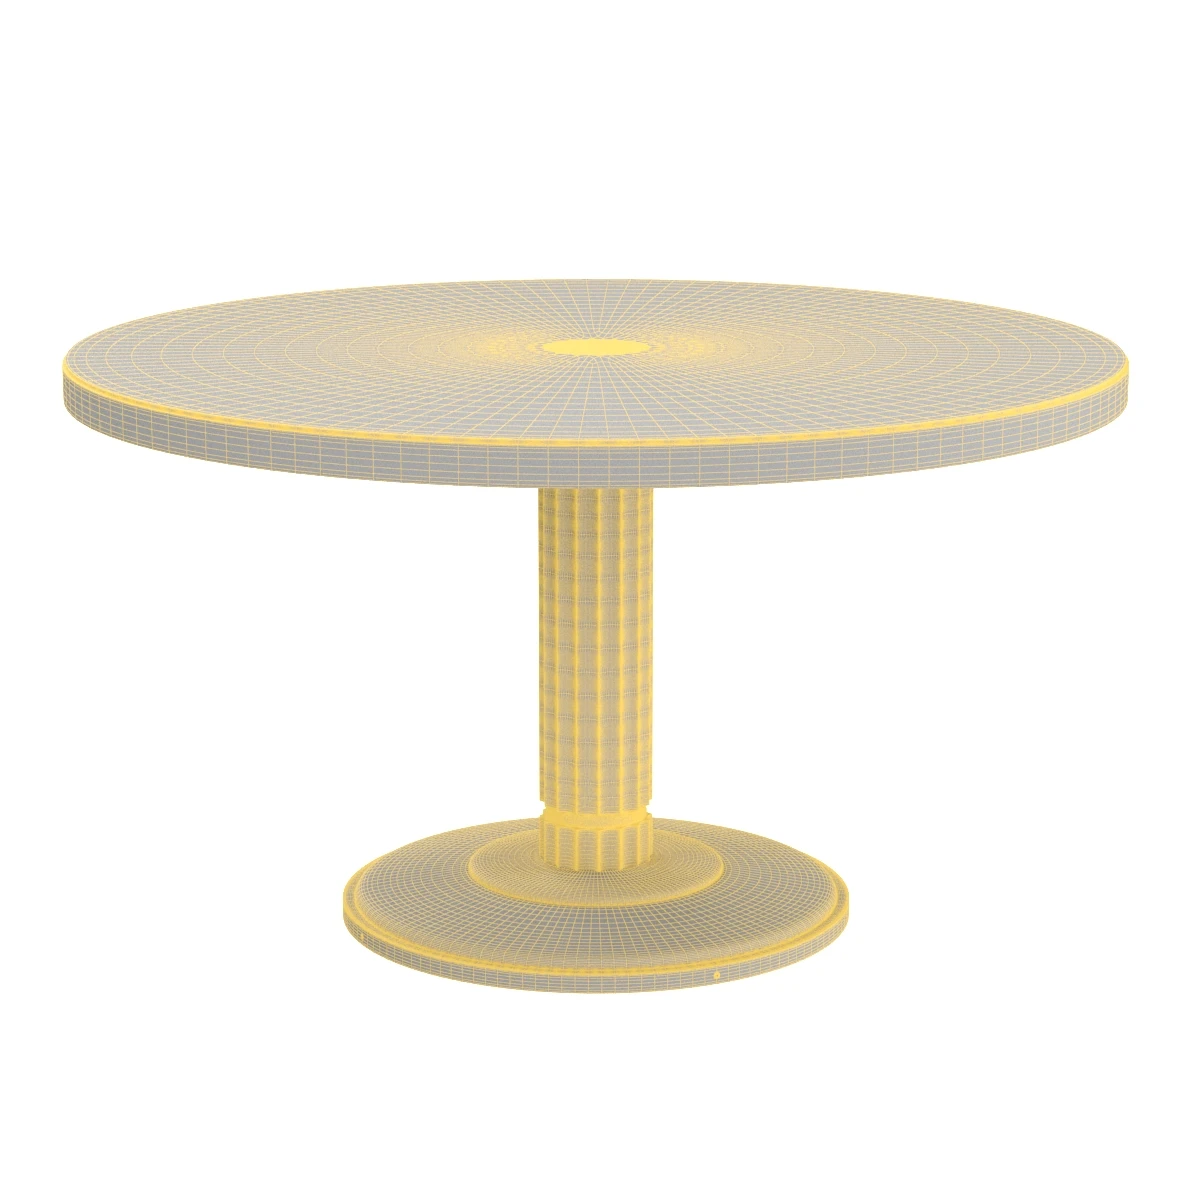 TH Robsjohn Gibbings Occasional or Center Table for Baker 3D Model_07